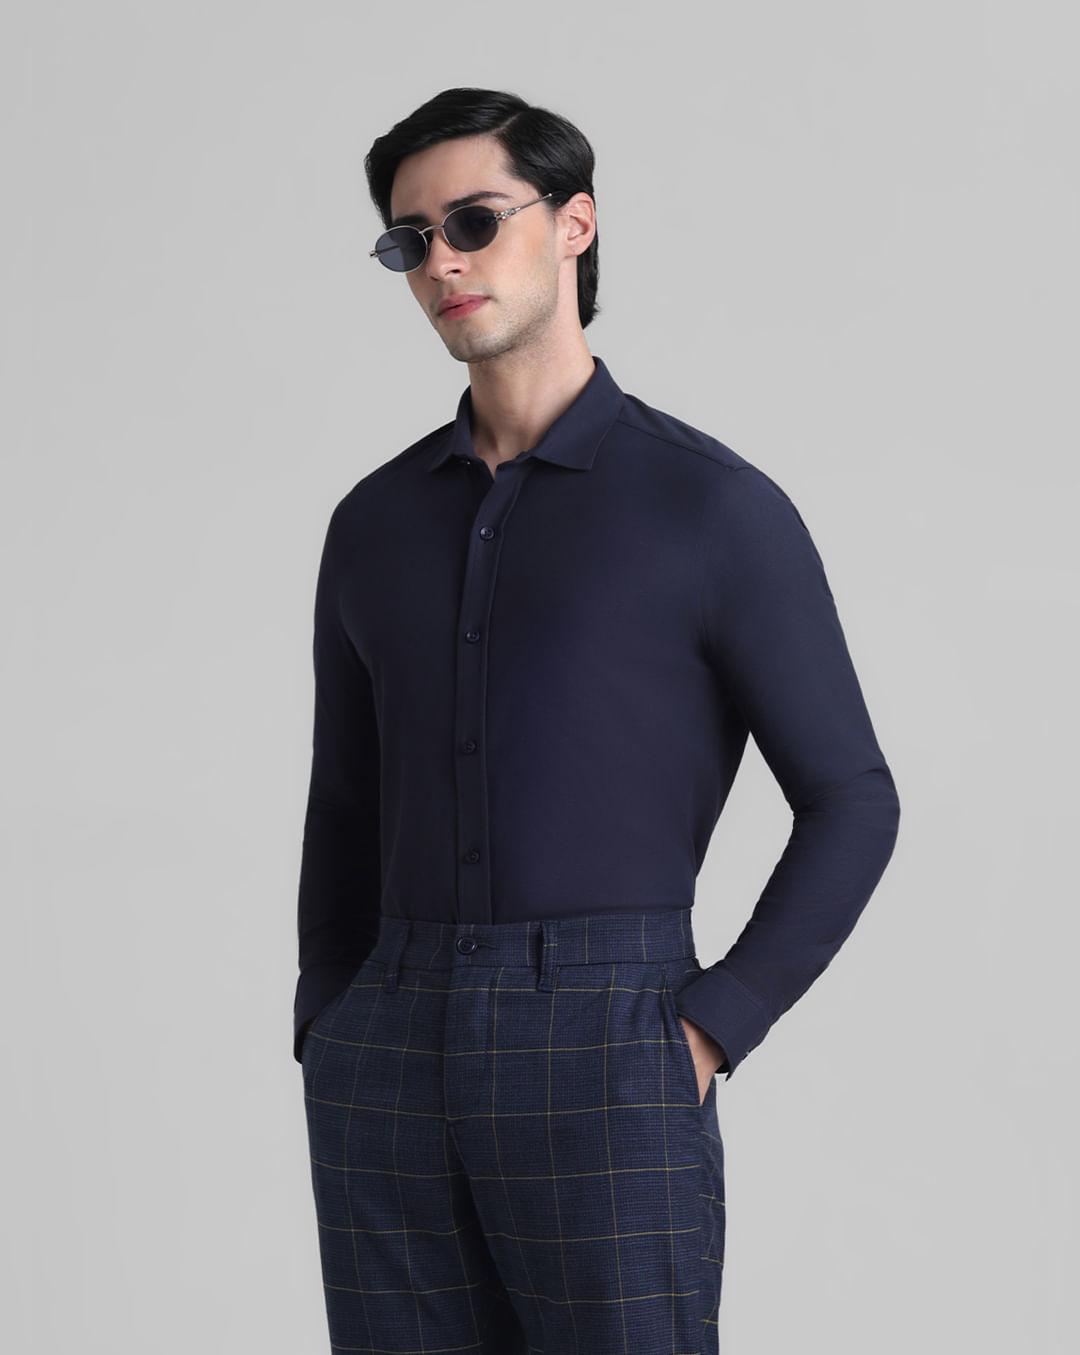 navy blue knitted full sleeves shirt